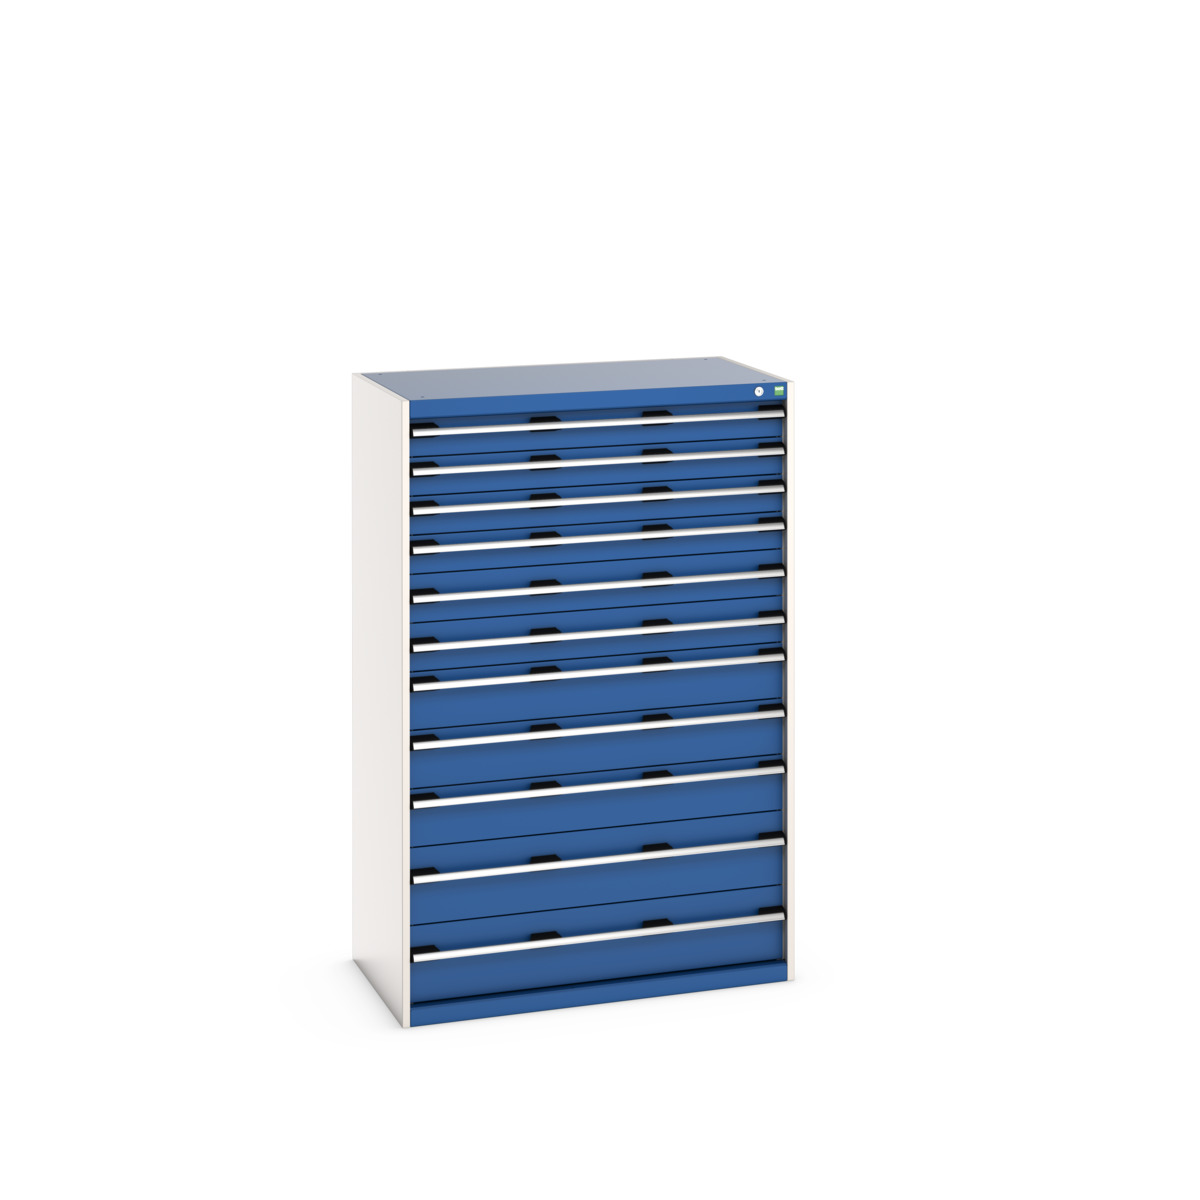 40021046.11V - cubio drawer cabinet